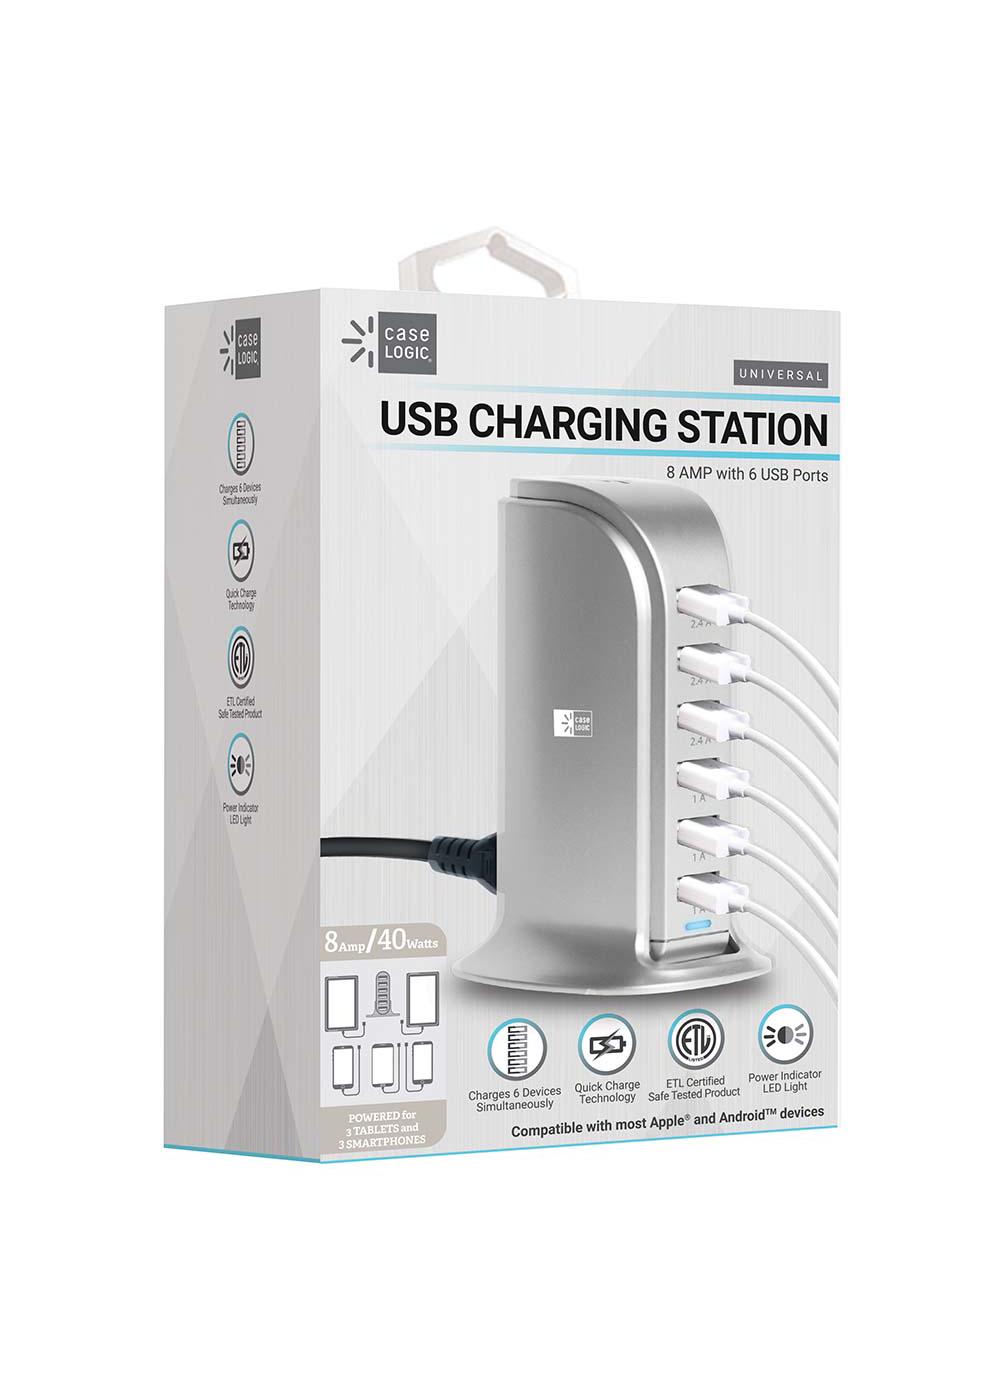 Case Logic Five-Port USB Charging Station - Silver; image 1 of 2